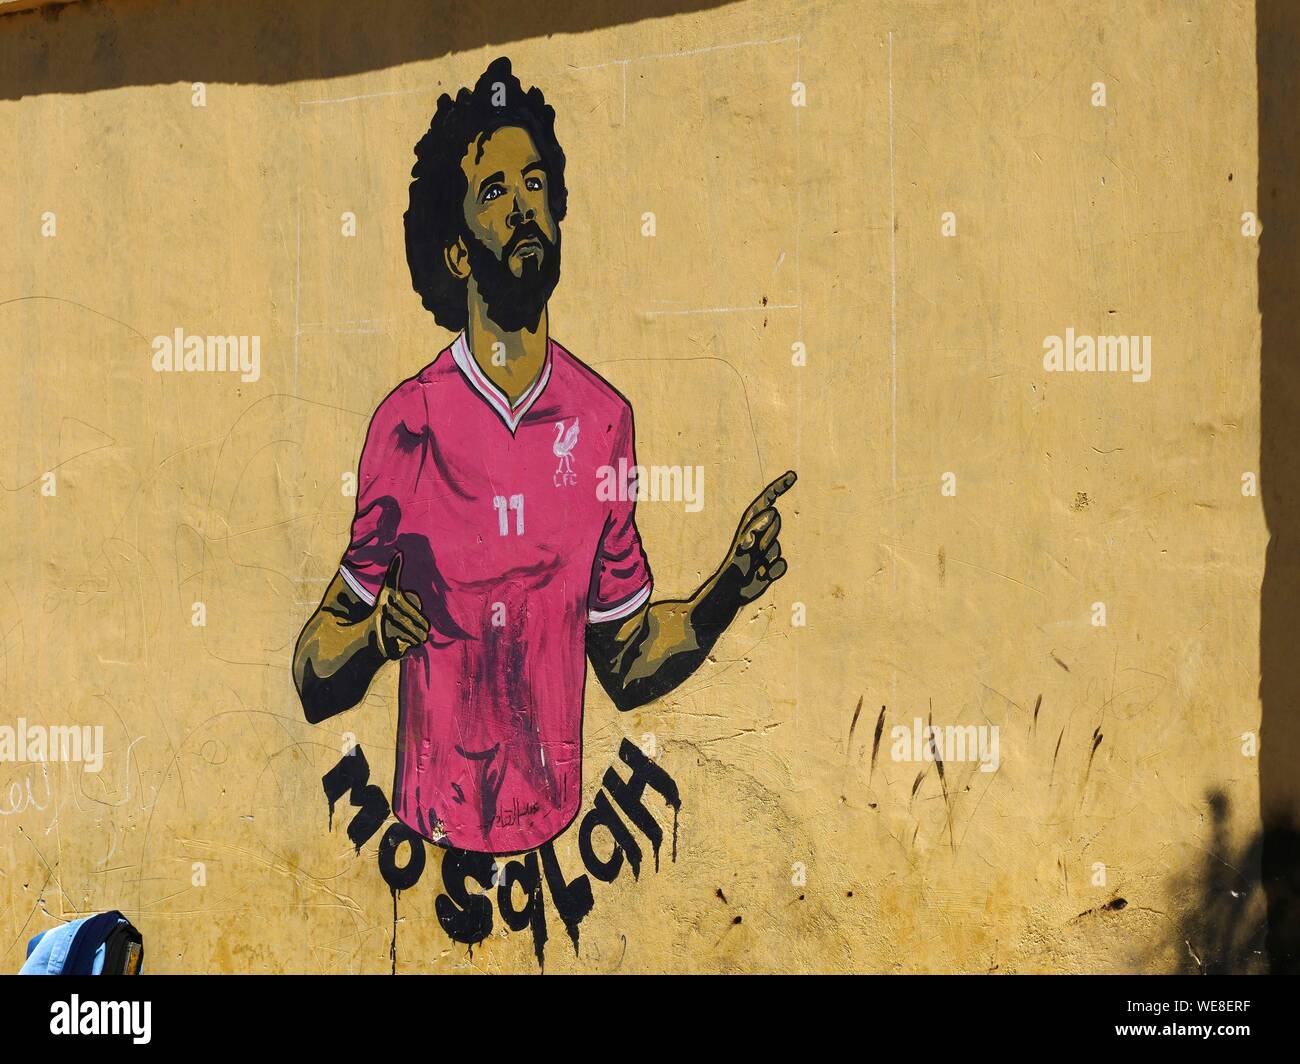 Calciatore Di Calcio Egiziano Immagini e Fotos Stock - Alamy